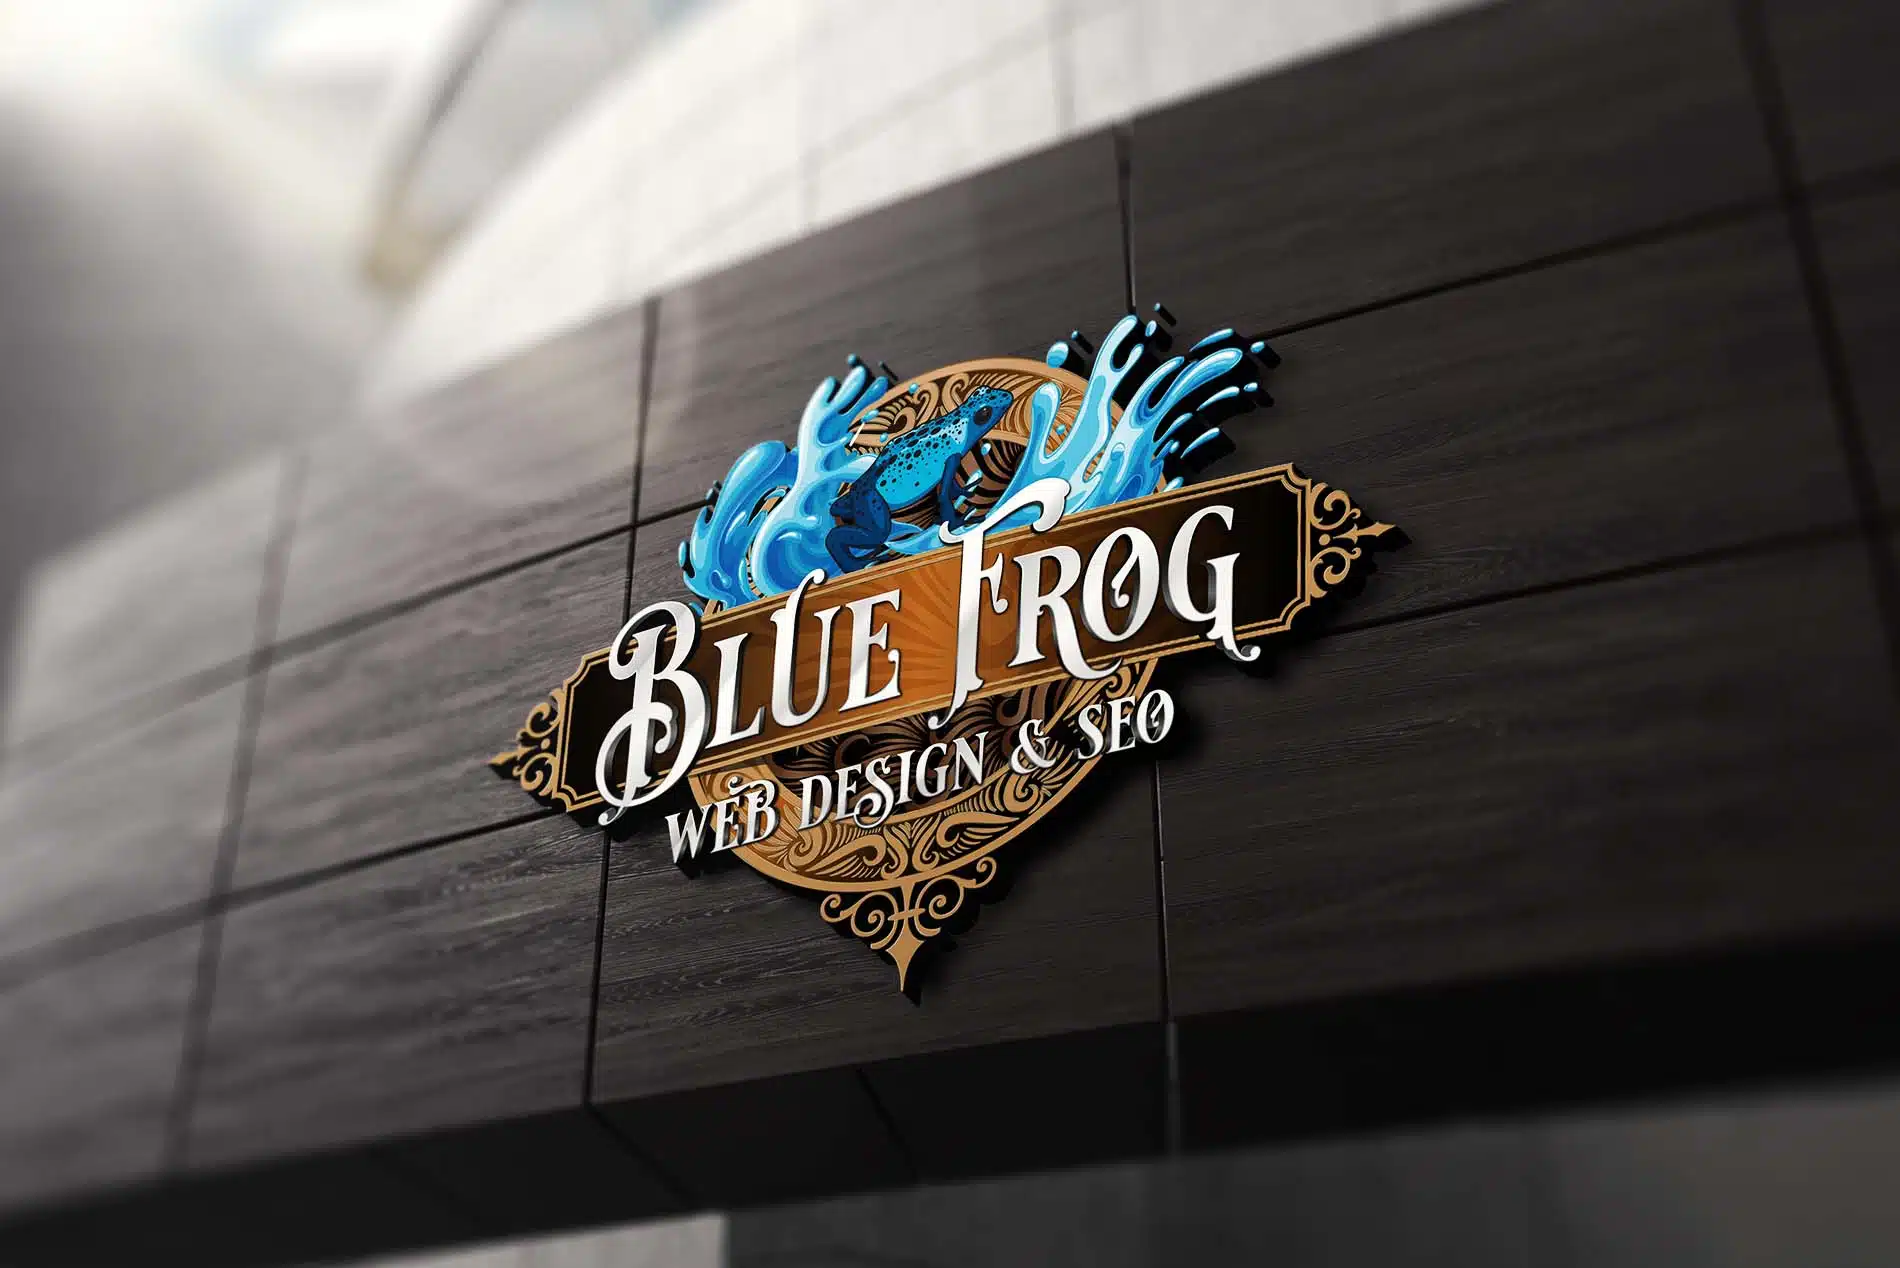 Web Design Questionnaire - Blue Frog Web Design & SEO